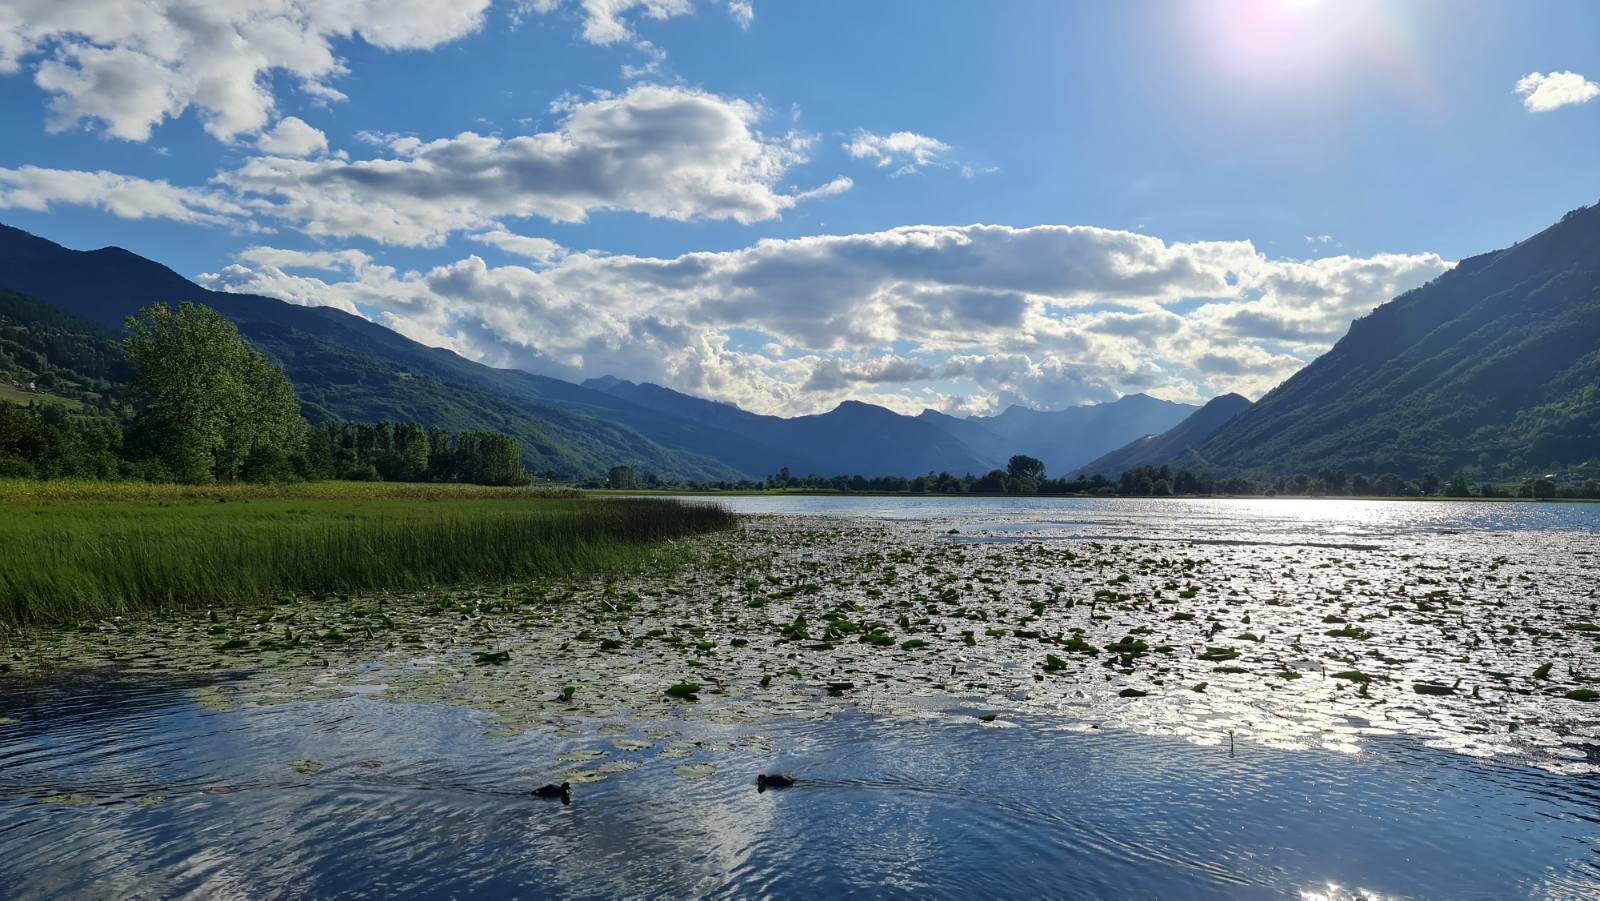 Plavsko lake, Part of Prokletije National Park